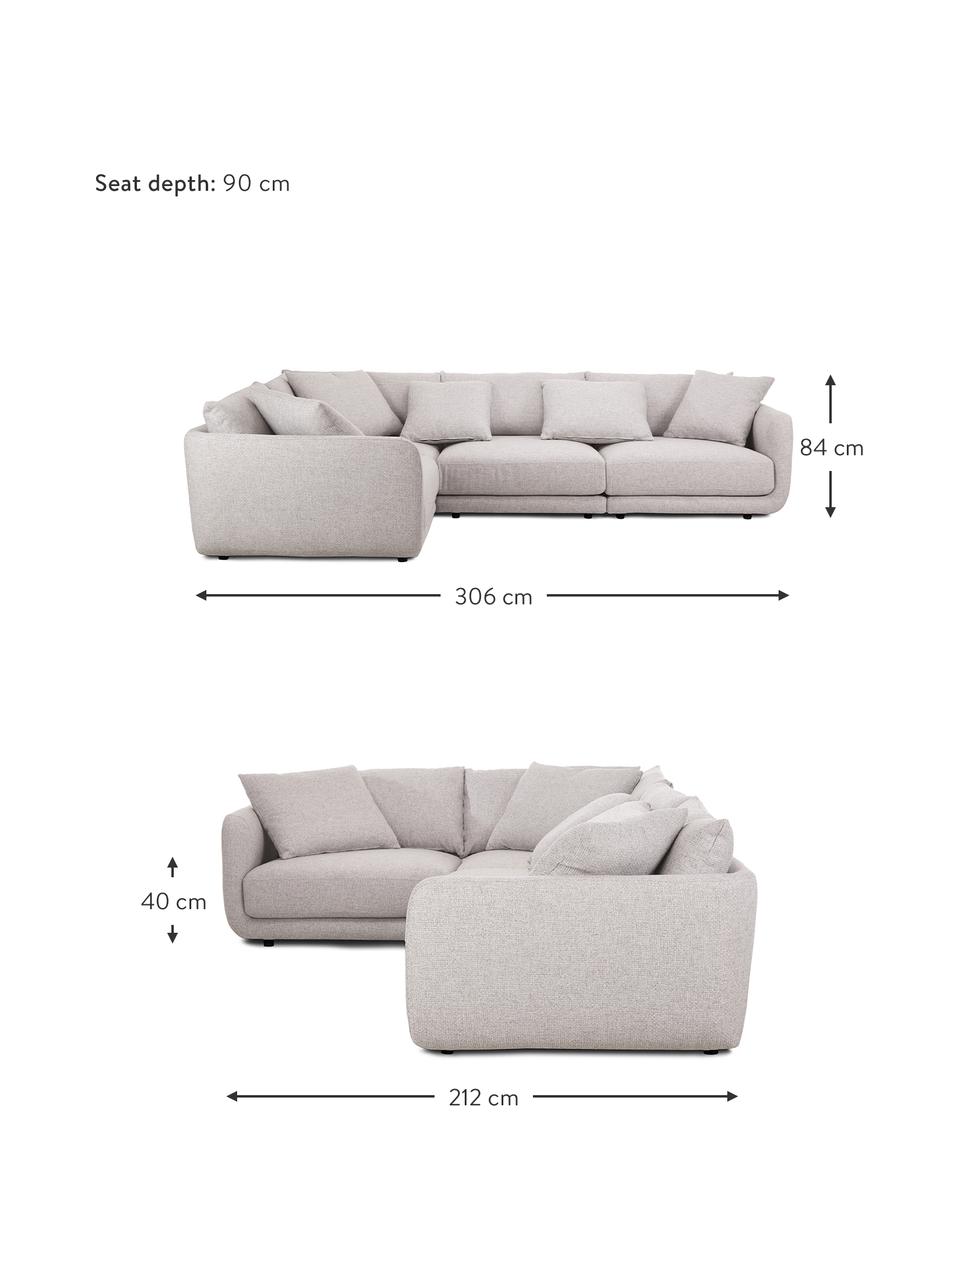 Narożna sofa modułowa Jasmin, Tapicerka: 100% poliester Dzięki tka, Nogi: tworzywo sztuczne, Jasnoszara tkanina, S 306 x W 84 cm